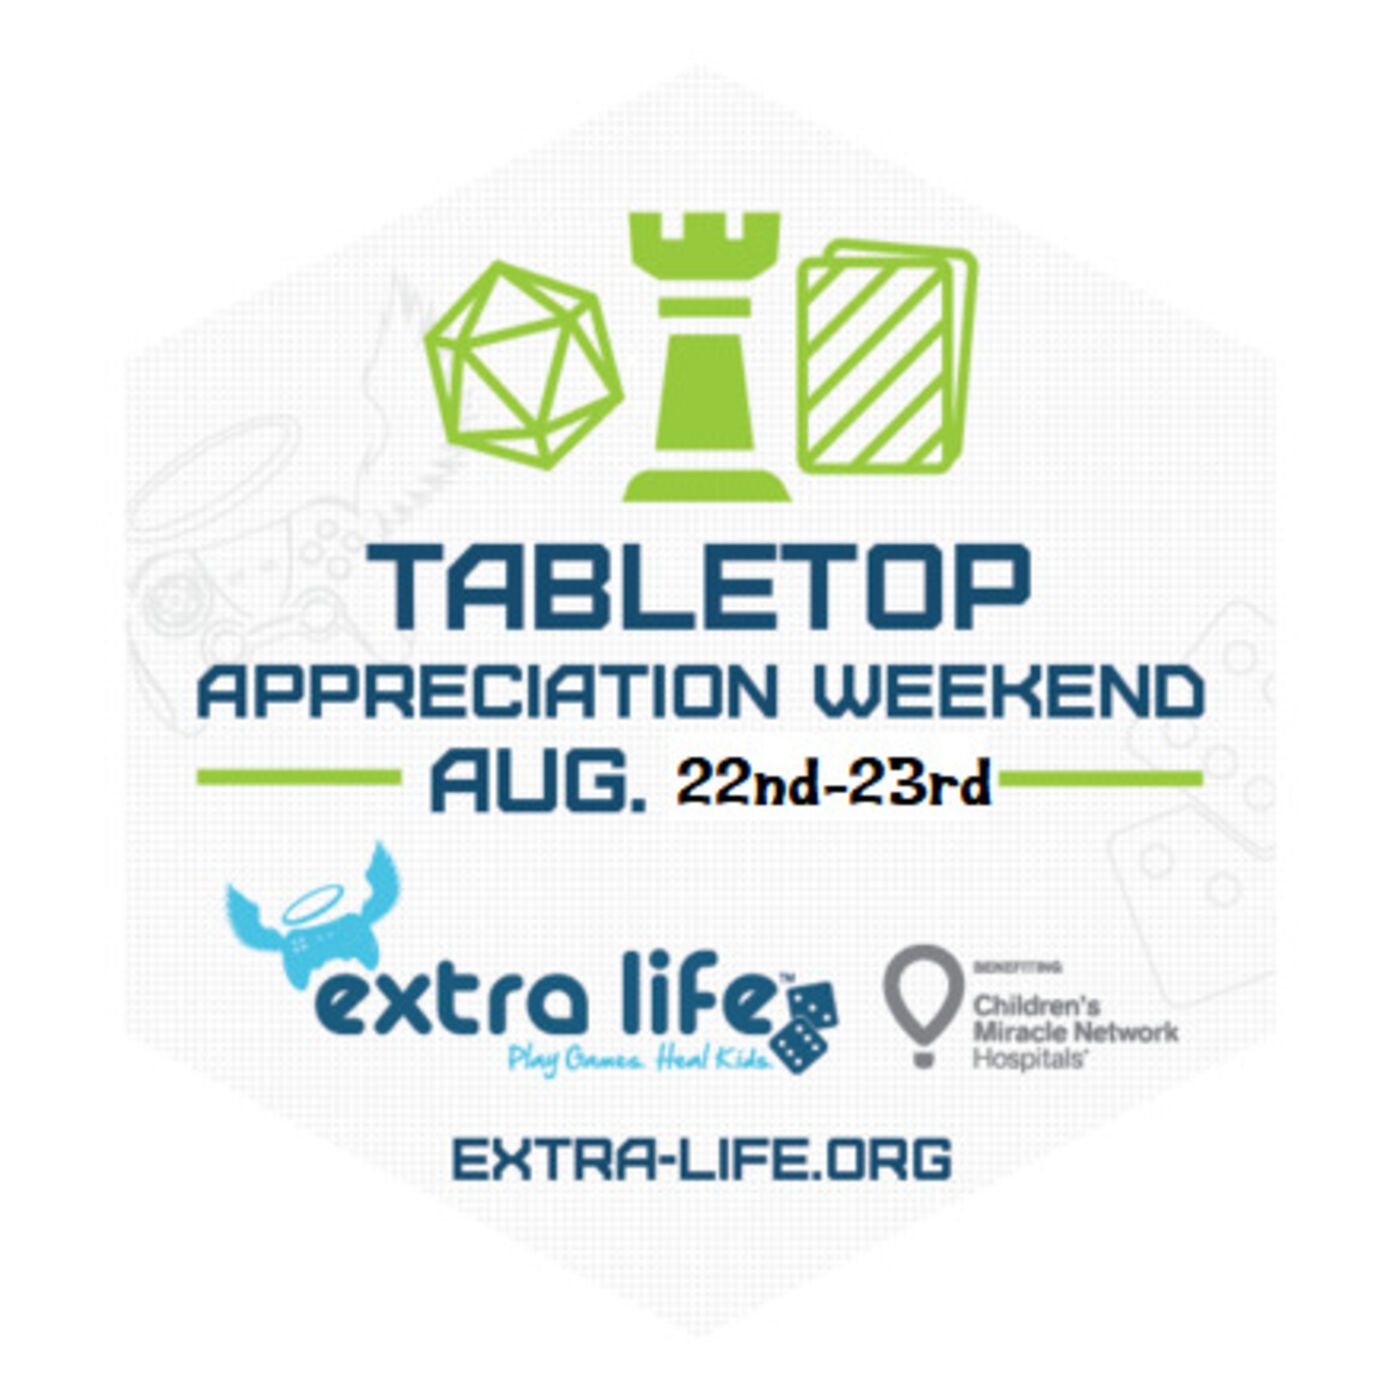 Extra-Life's Tabletop Appreciation Weekend